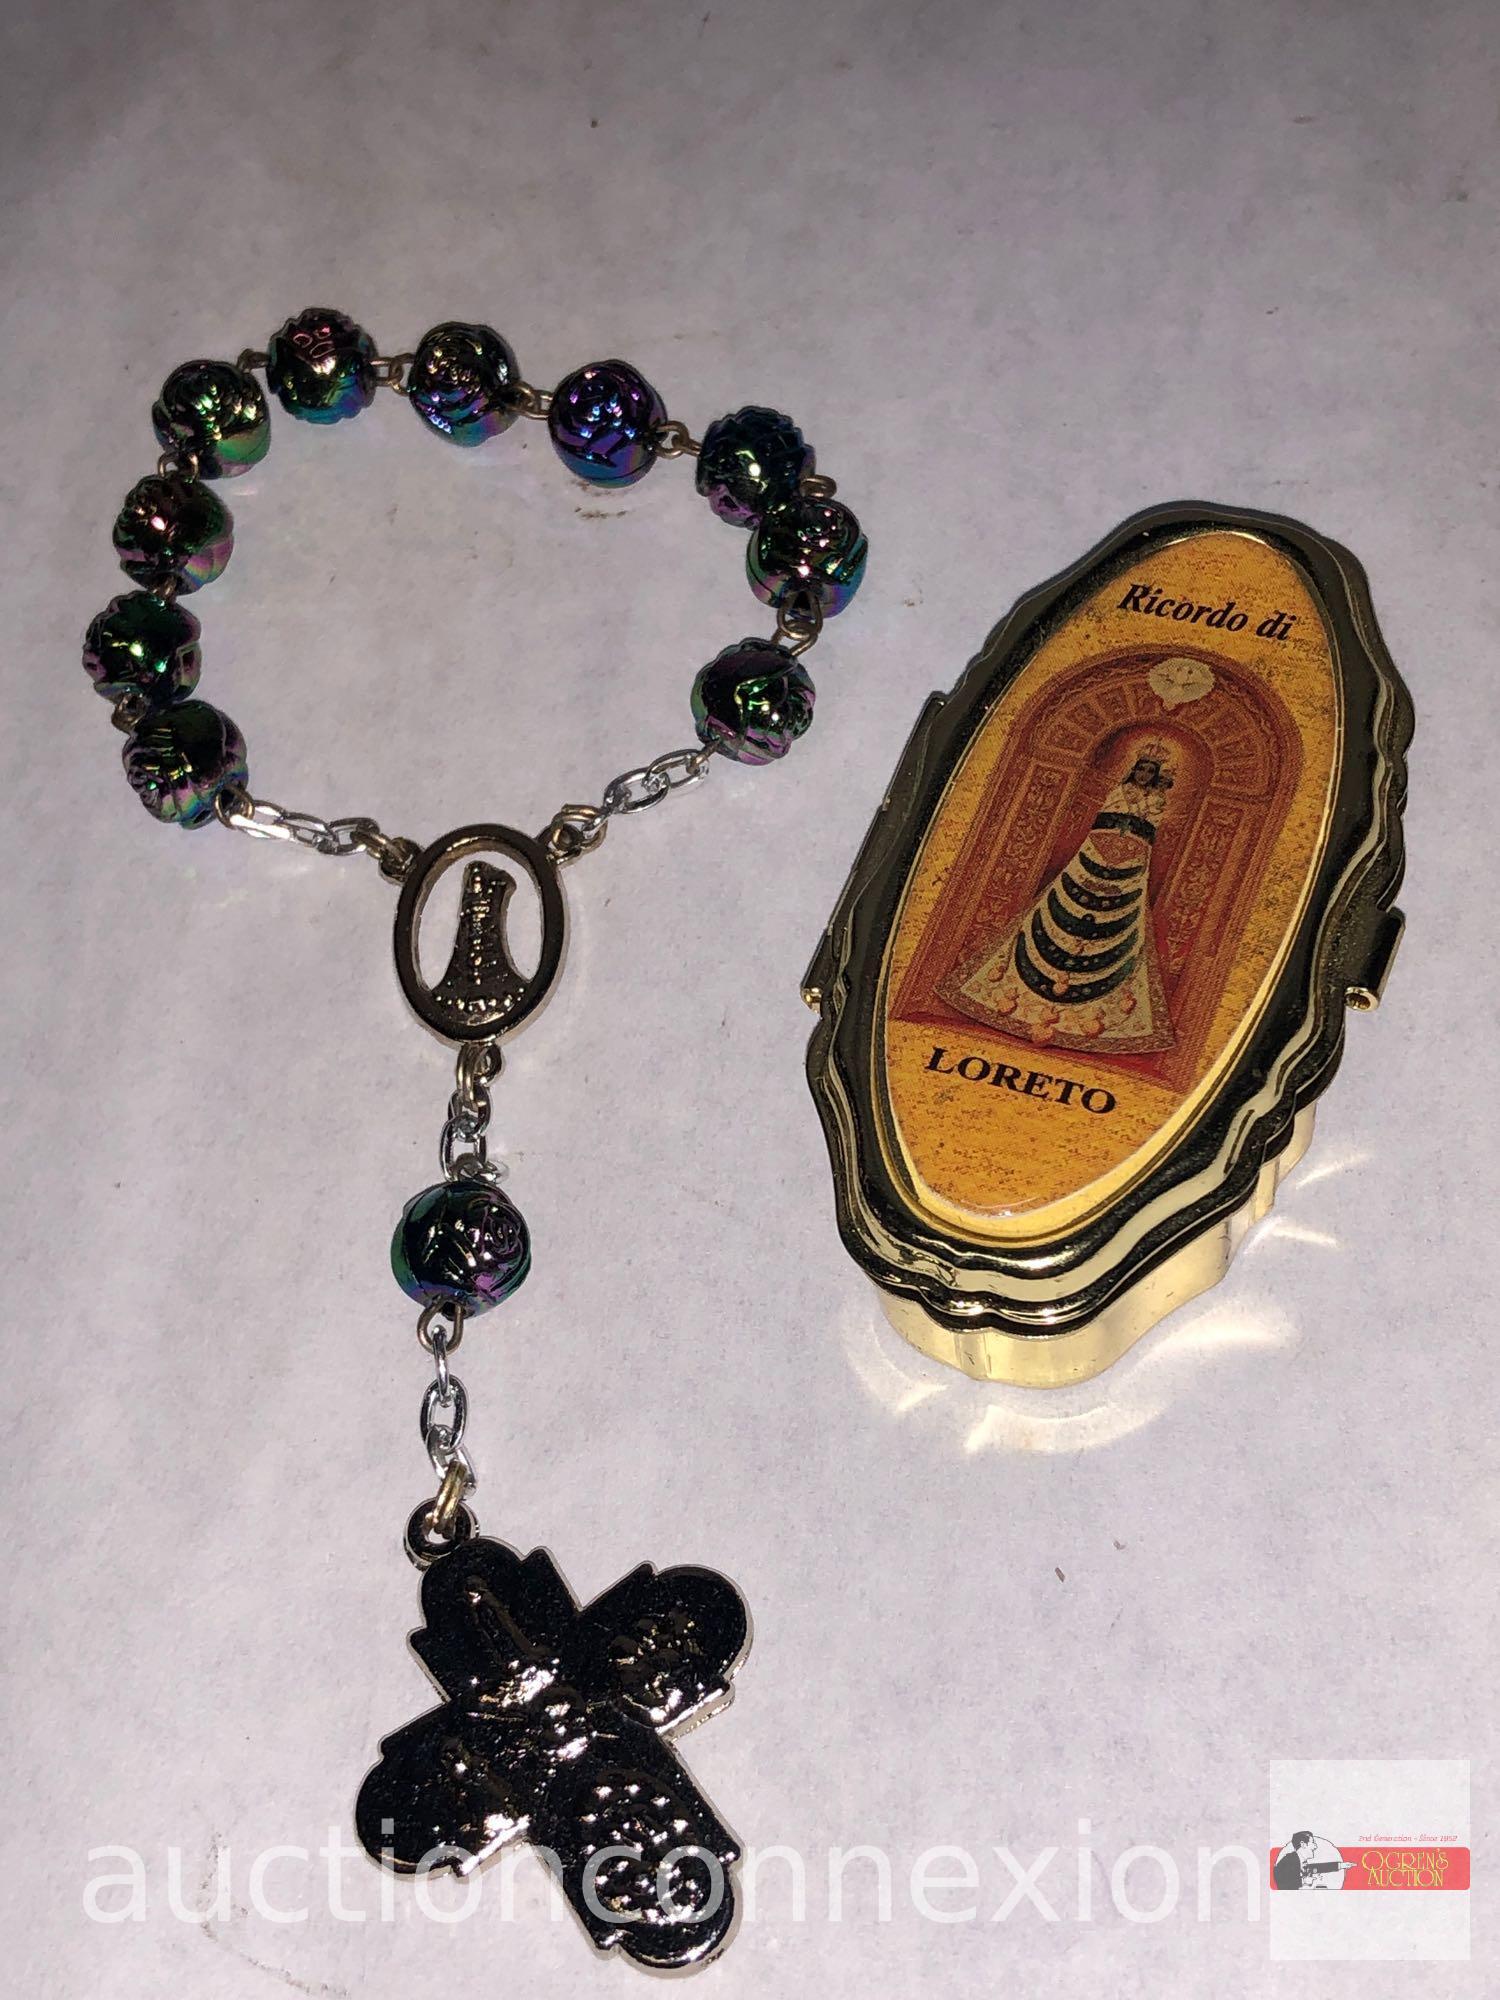 Religious - child's rosary bracelet and Ricordo di Loreto tin